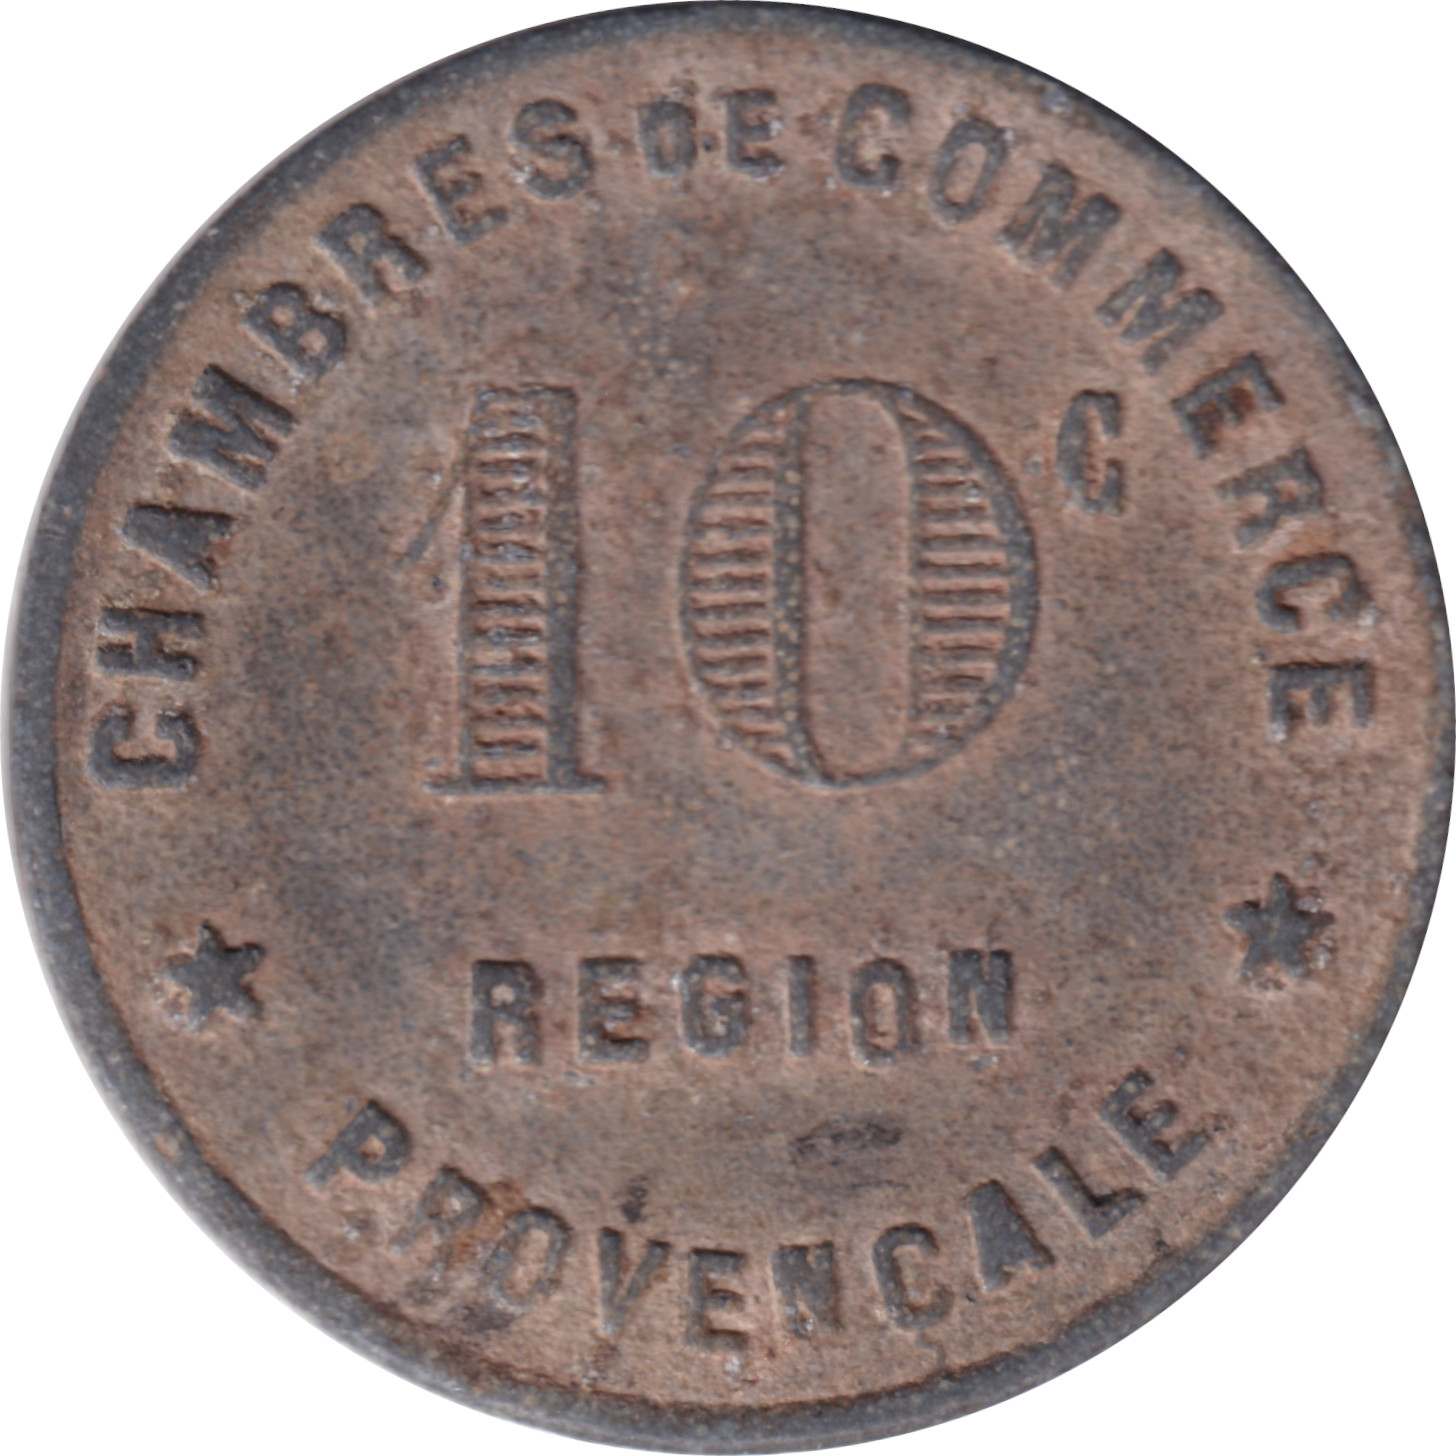 10 centimes - Région provençale - Type 1